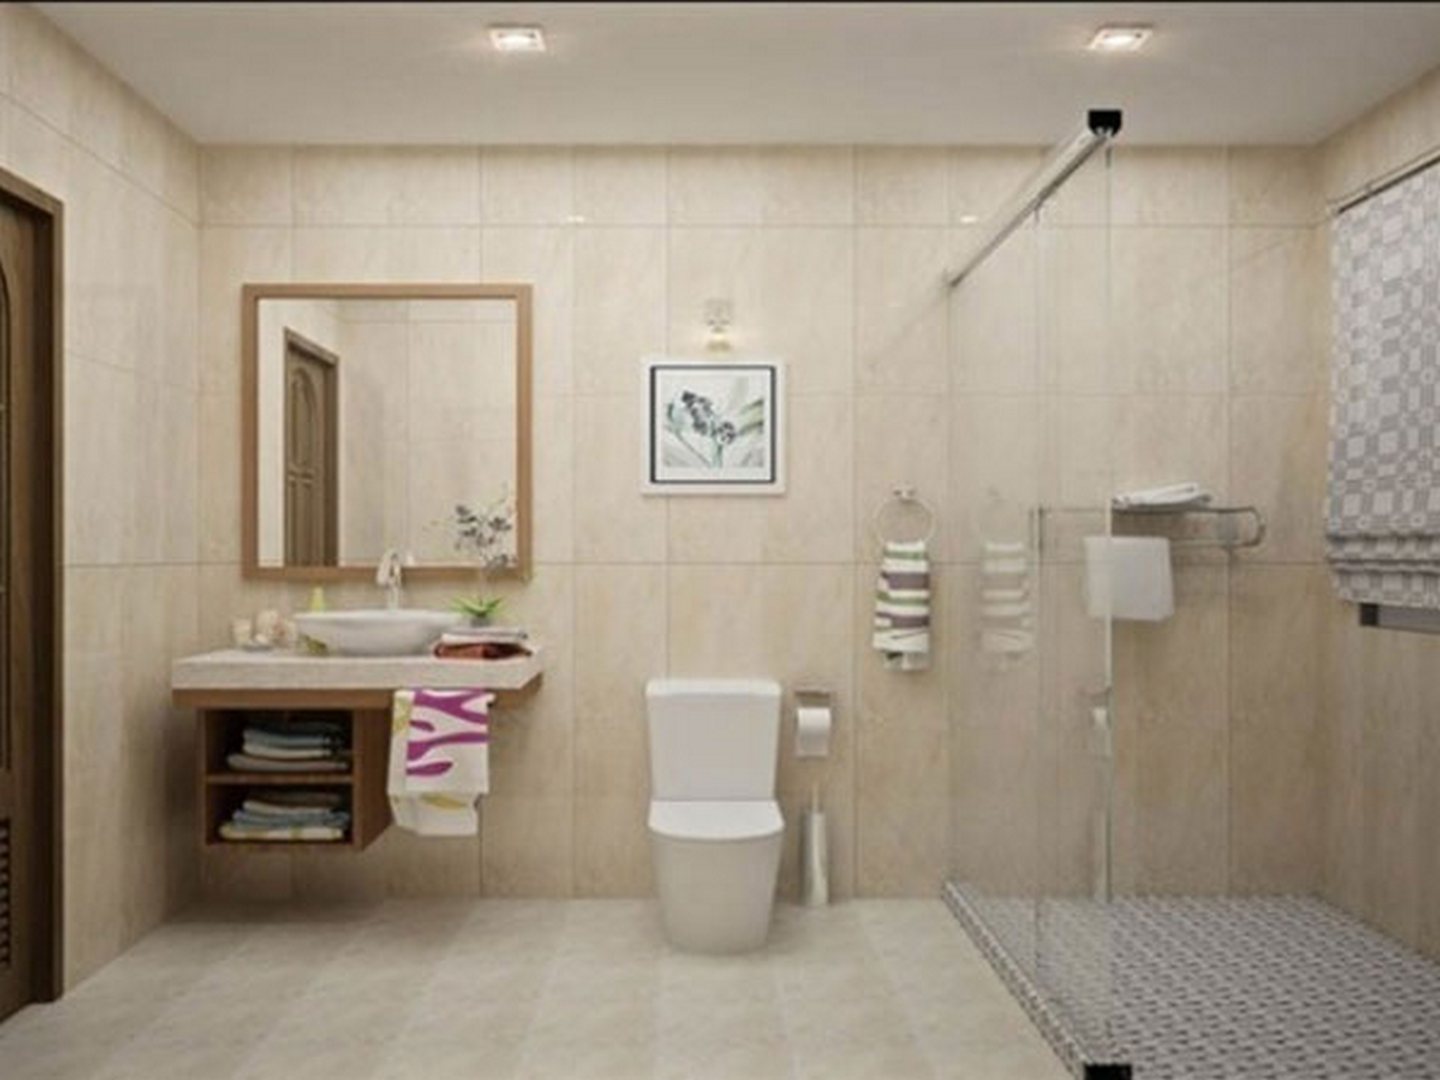 Chọn đèn gương nhà tắm đúng là quan trọng cho không gian tắm của bạn. Năm 2024, chúng tôi mang đến cho bạn sự đa dạng trong thiết kế đèn gương nhà tắm. Từ đèn led đến đèn cổ điển, chúng tôi cam kết cung cấp cho bạn sản phẩm chất lượng nhất với giá cả hợp lý. Hãy xem các hình ảnh liên quan để lựa chọn đèn gương nhà tắm phù hợp nhất cho phòng tắm của bạn.